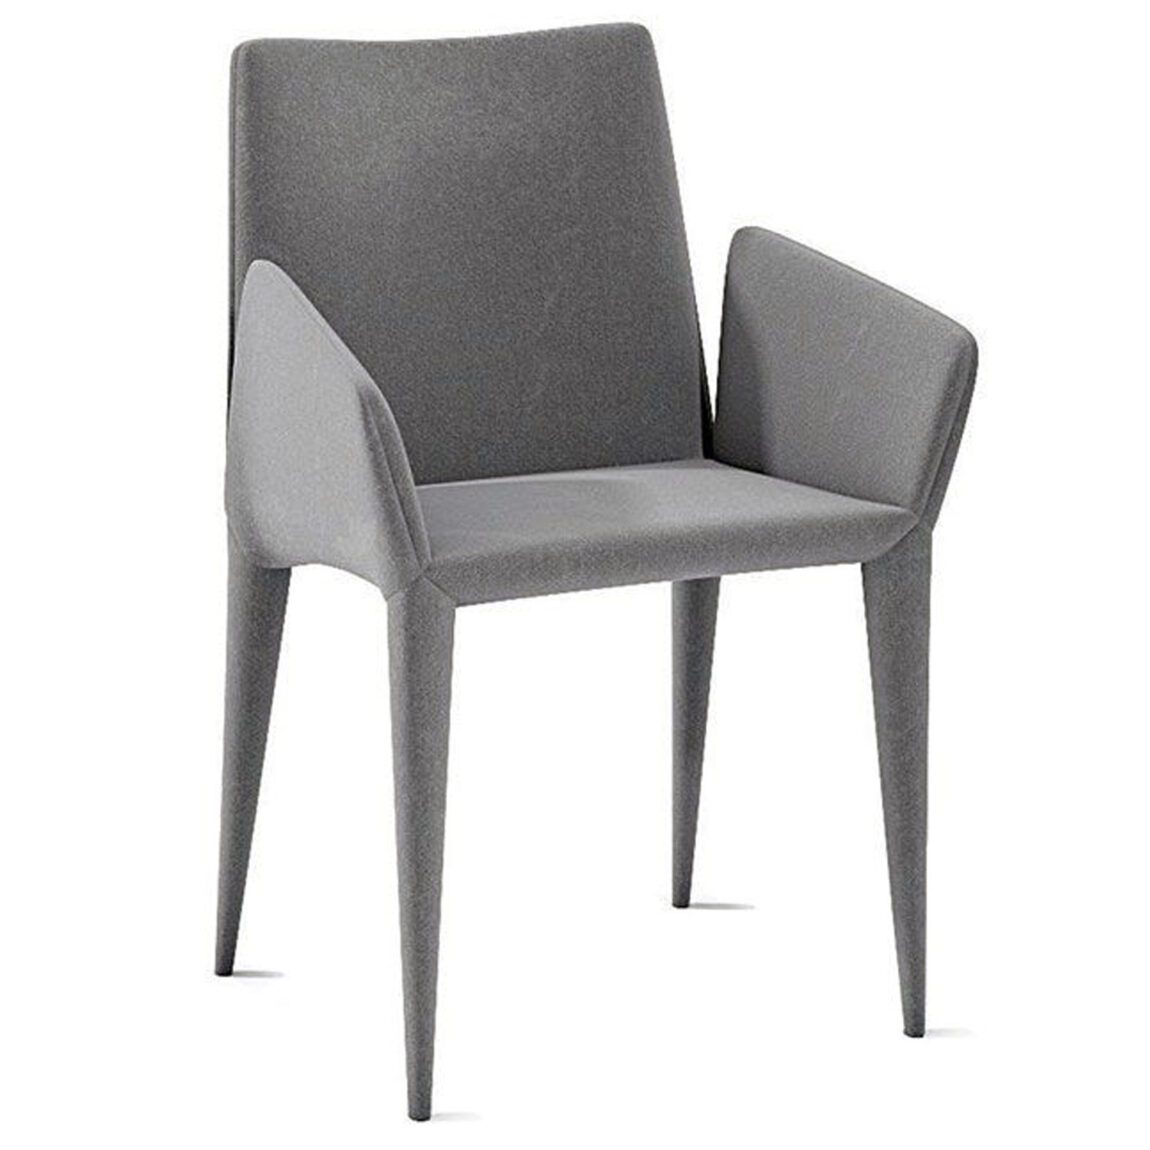 Výprodej Bonaldo designové židle Filly 2